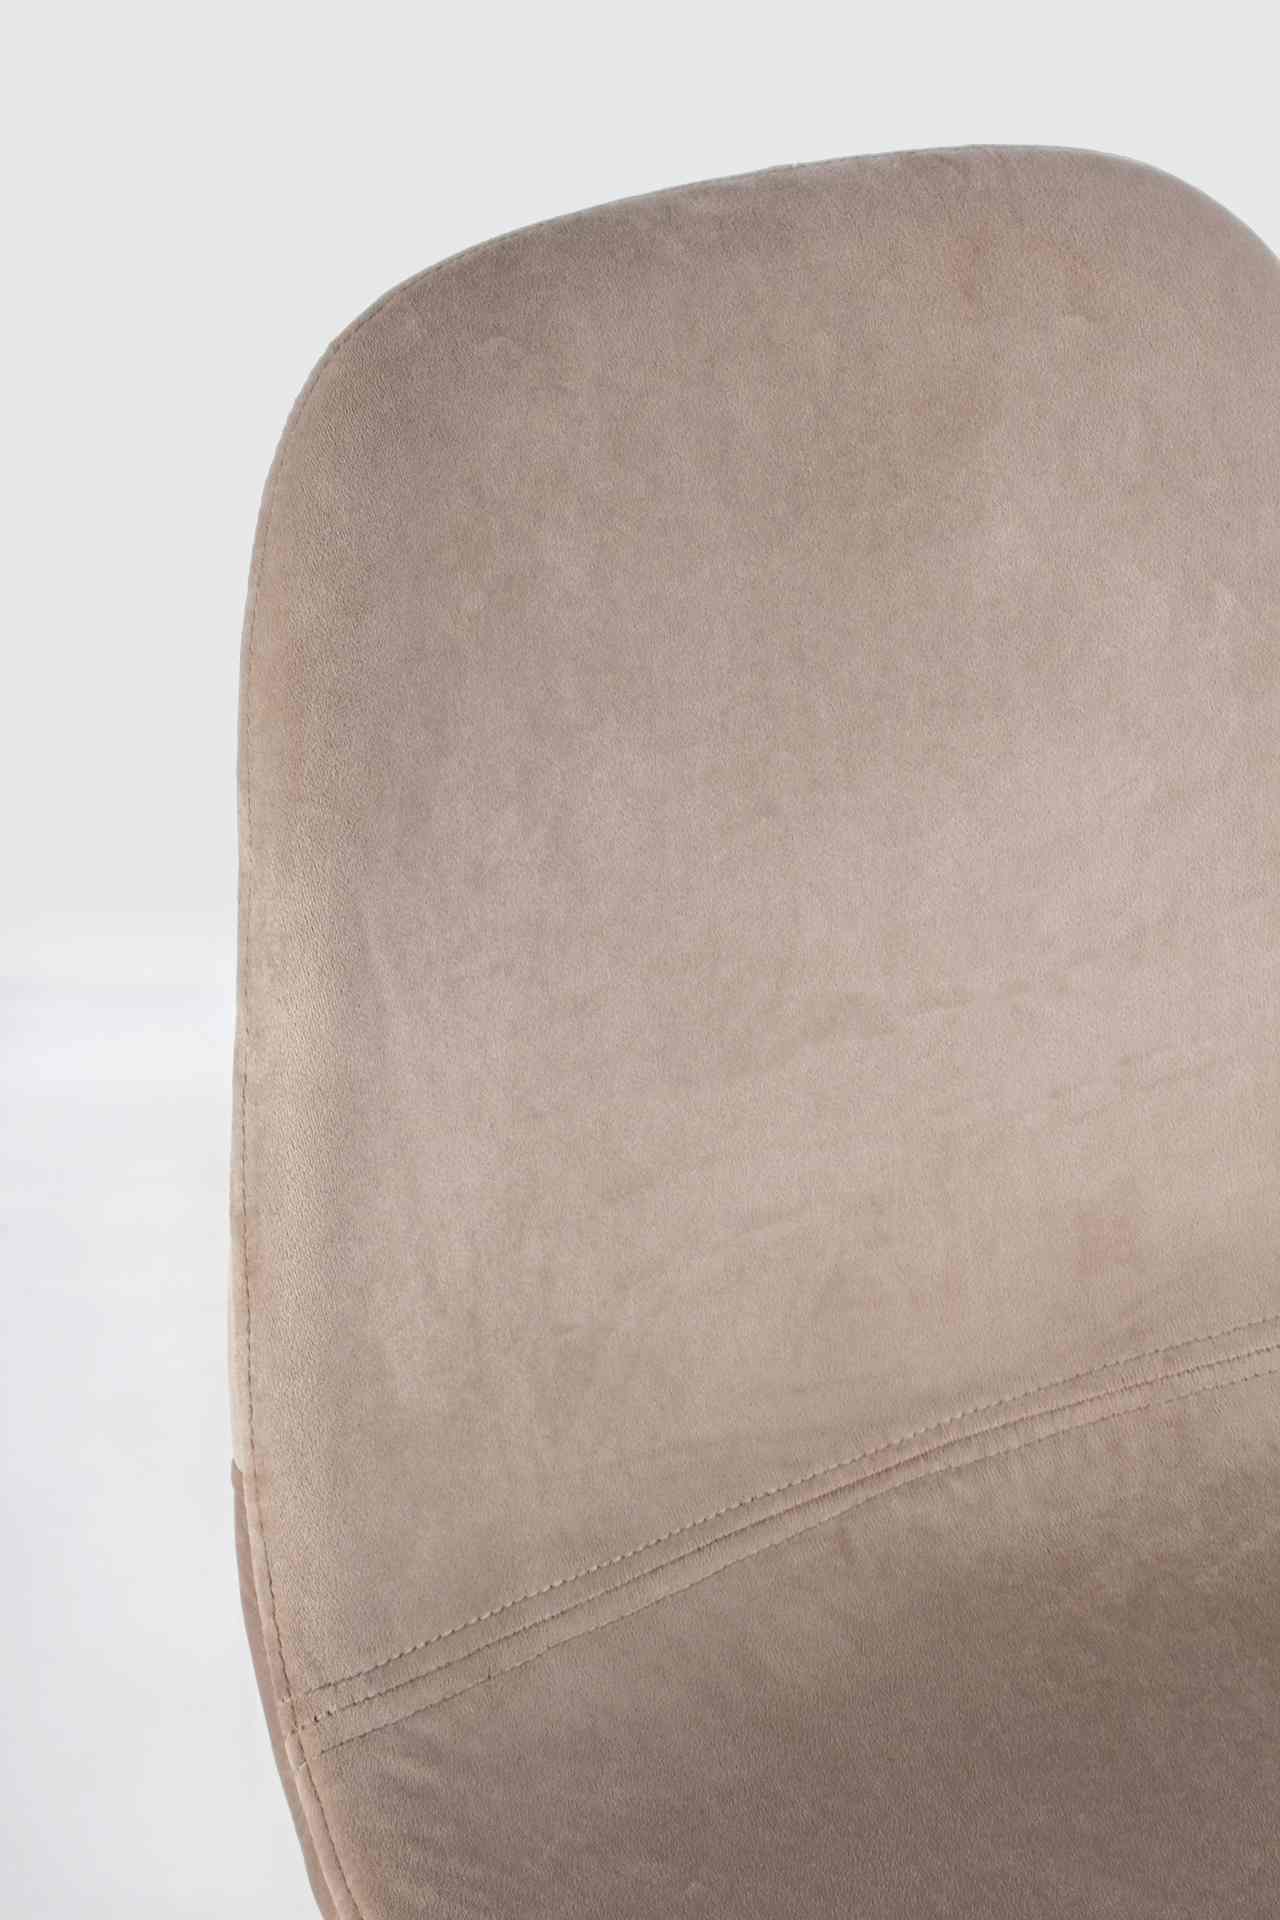 Der Barhocker Irelia überzeugt mit seinem moderndem Design. Gefertigt wurde er aus Samt, welches einen Taupe Farbton besitzt. Das Gestell ist aus Metall und hat eine schwarze Farbe. Die Sitzhöhe des Hockers beträgt 76 cm.